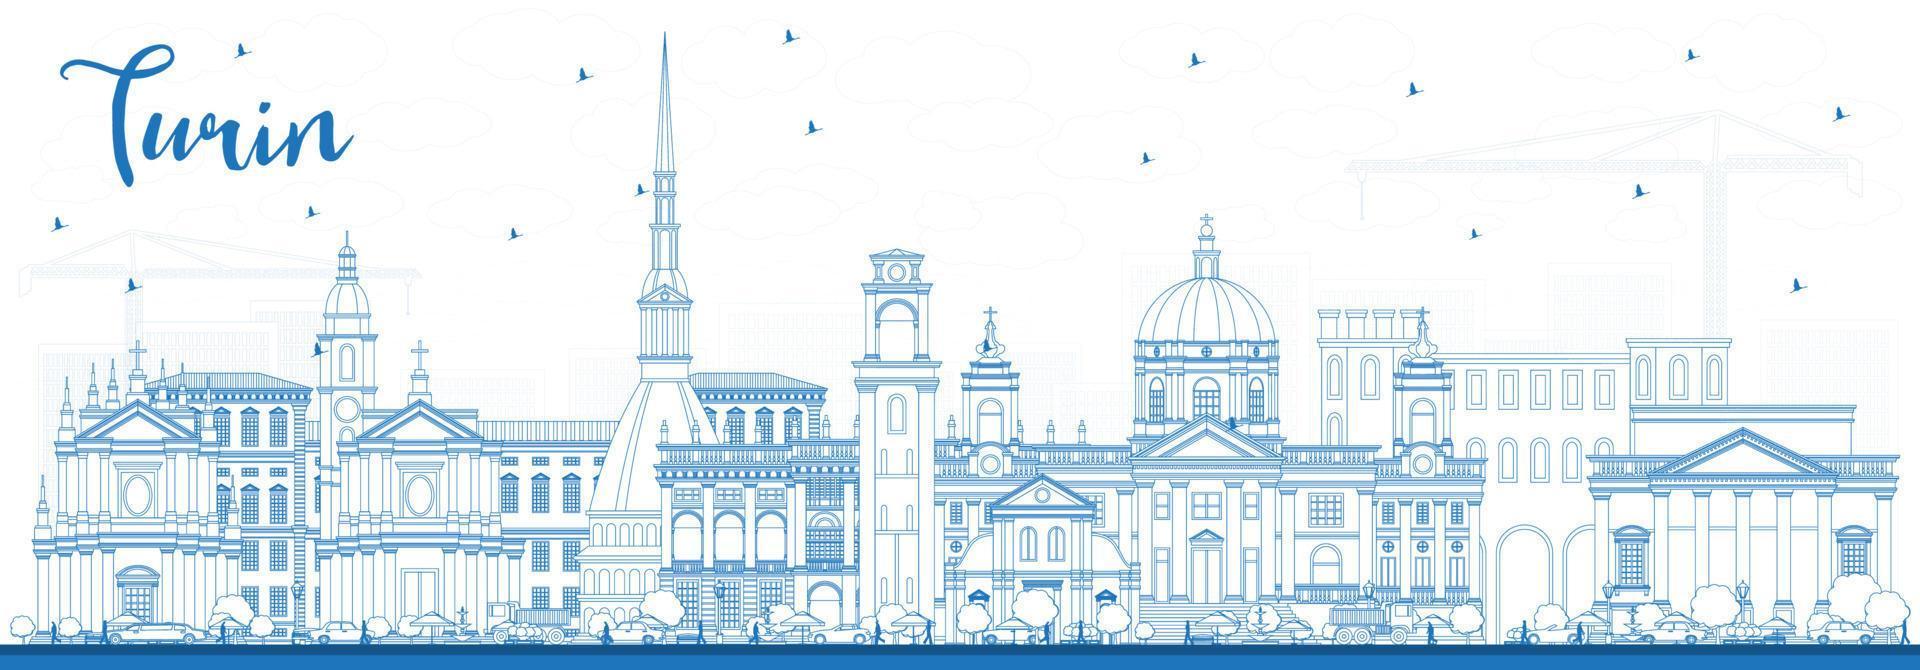 delinear el horizonte de la ciudad de Turín, Italia, con edificios azules. vector